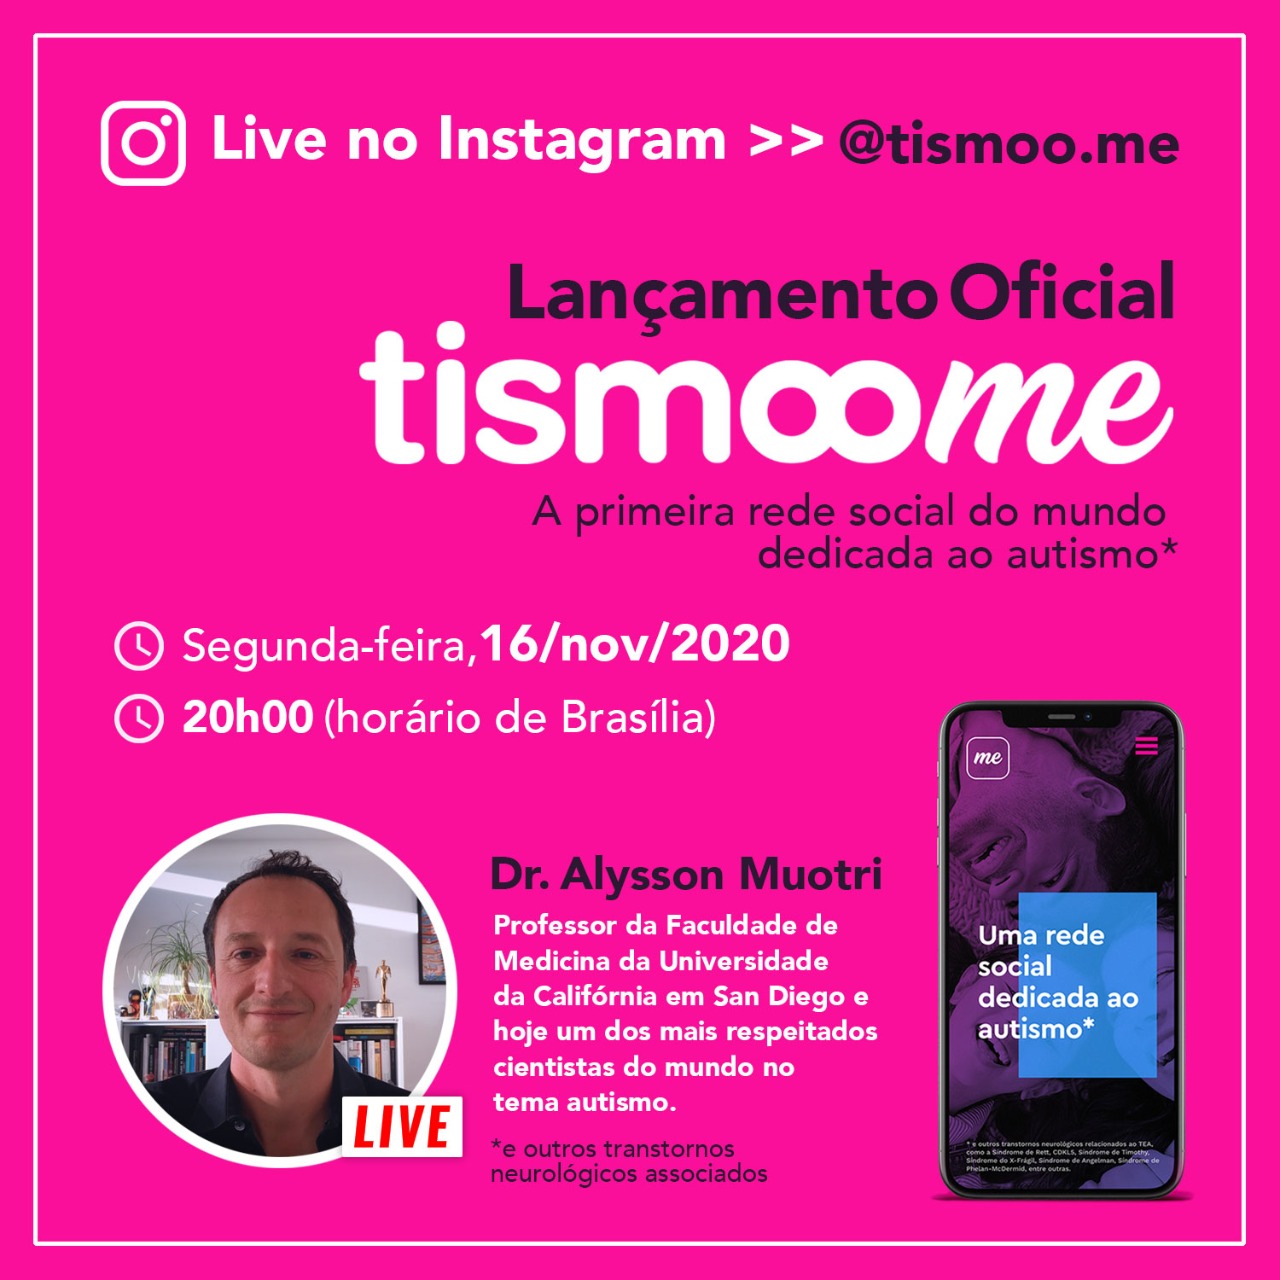 Brasil lança primeira rede social do mundo dedicada ao autismo: Tismoo.me — Revista Autismo